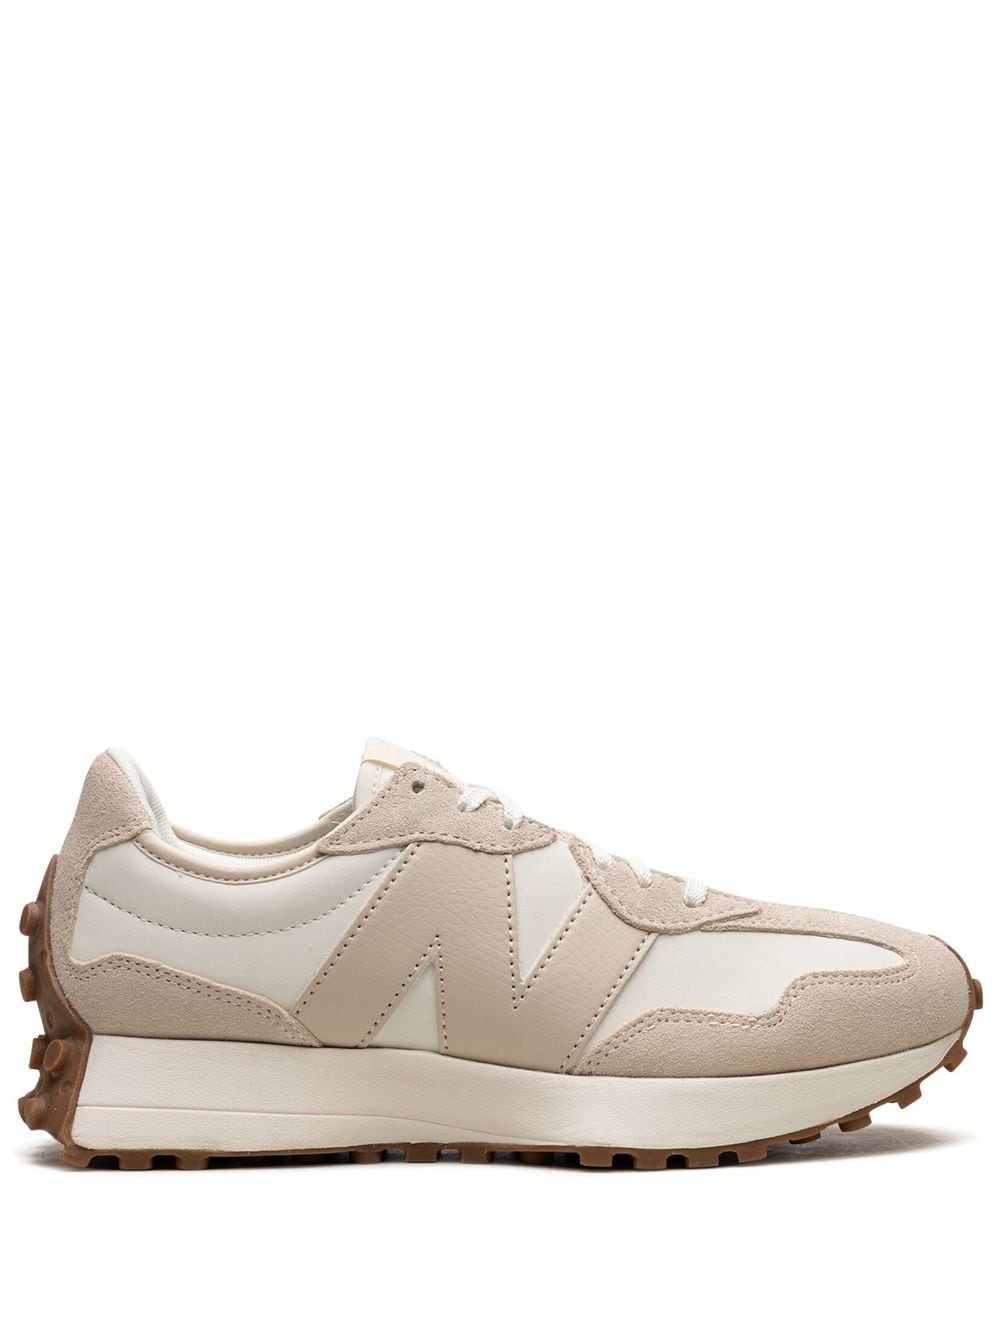 New Balance 327 "Beige White Gum" sneakers - Neutrals